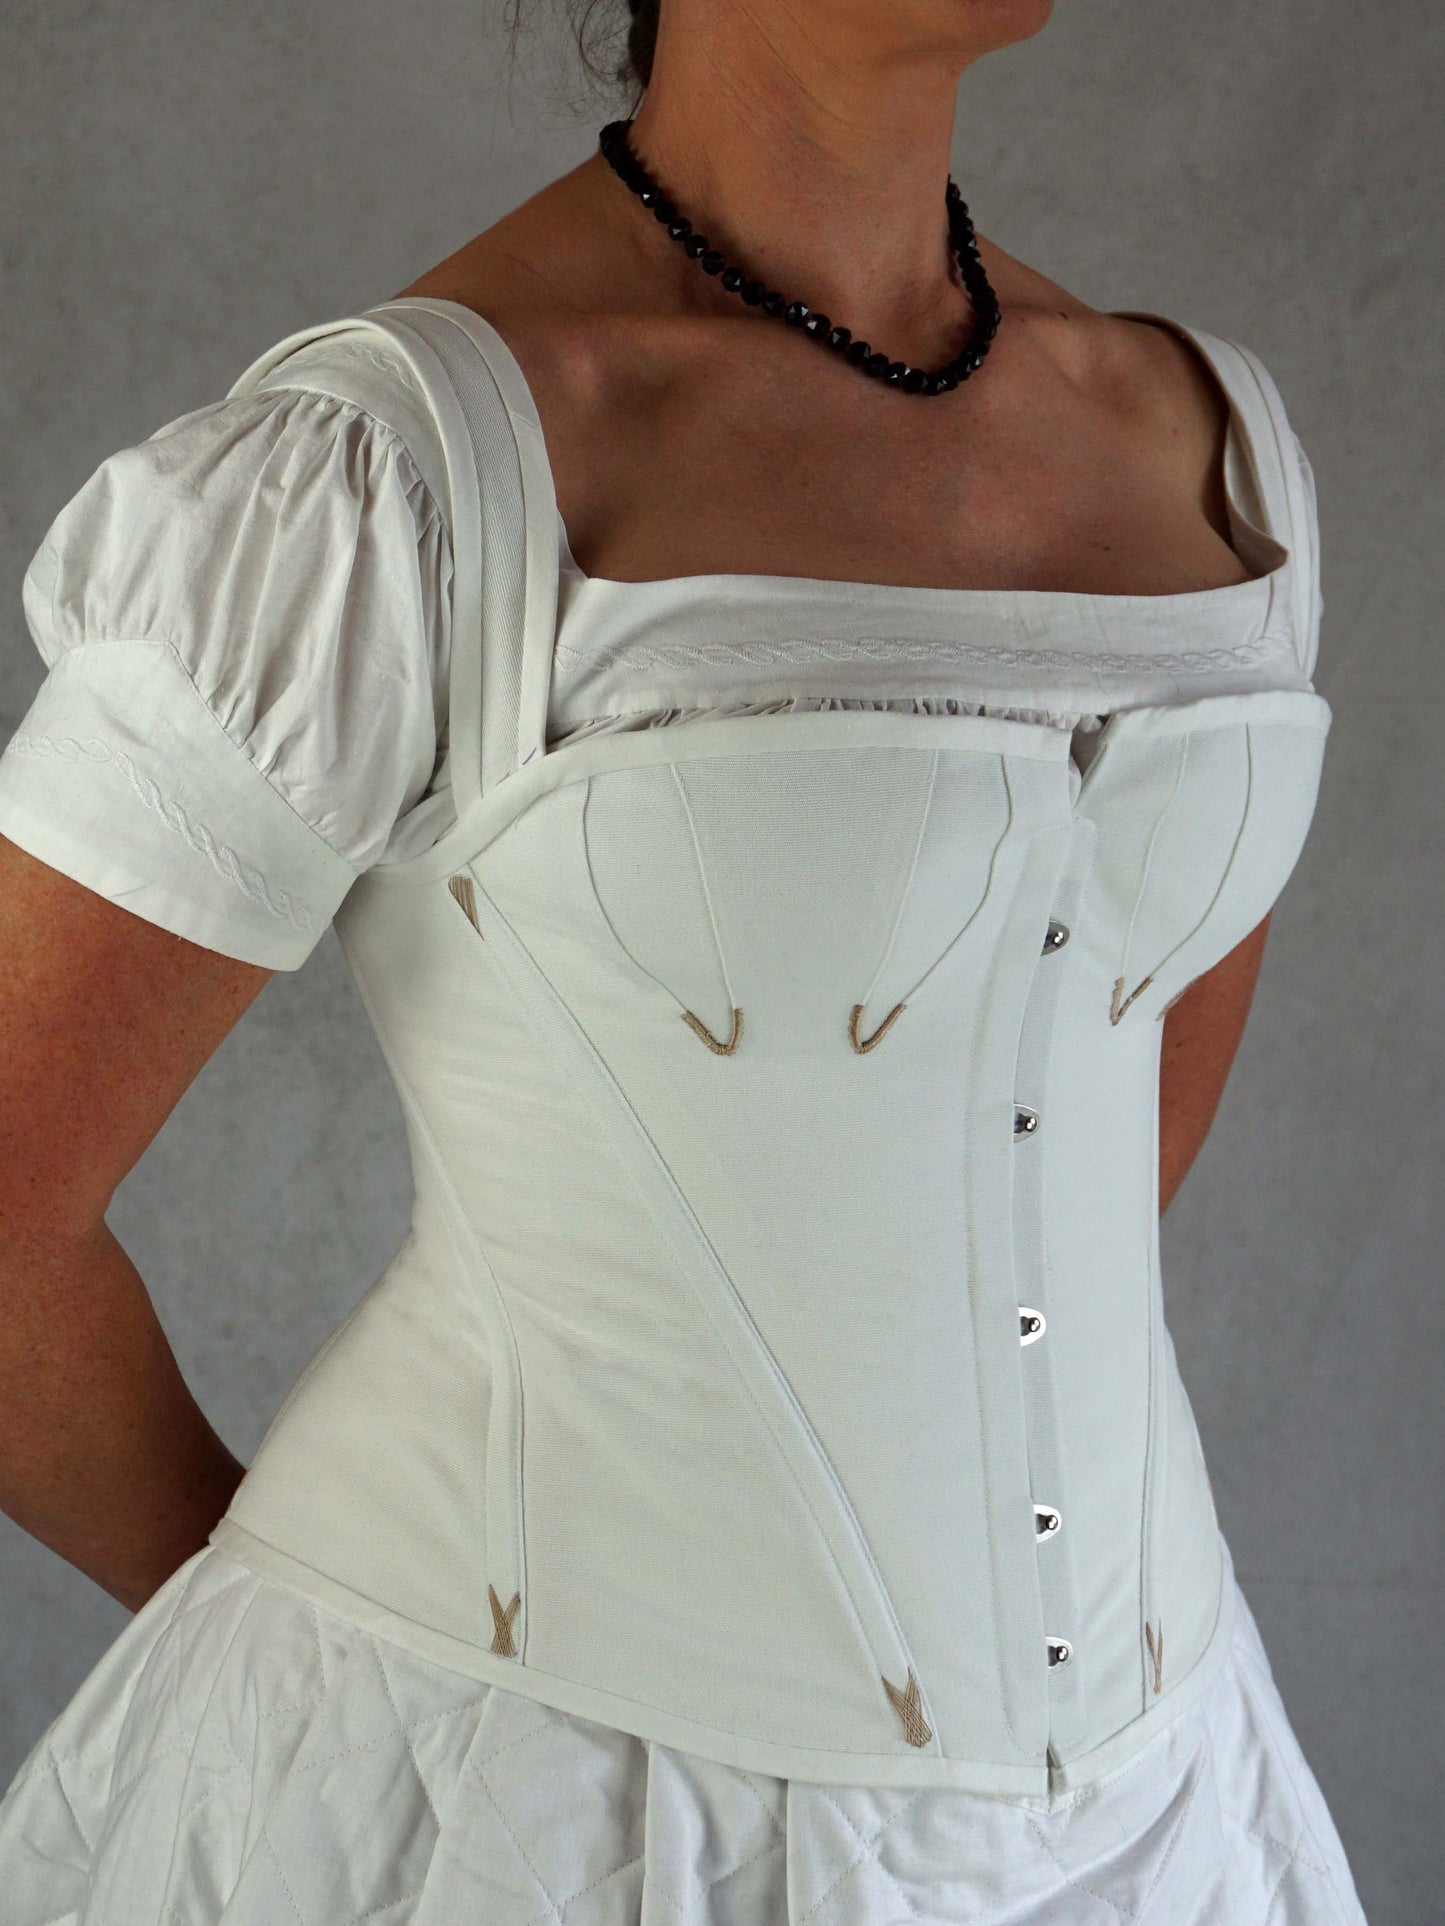 Edwardian swimming corset/ buckled belt pattern Sizes UK8-30/ US4